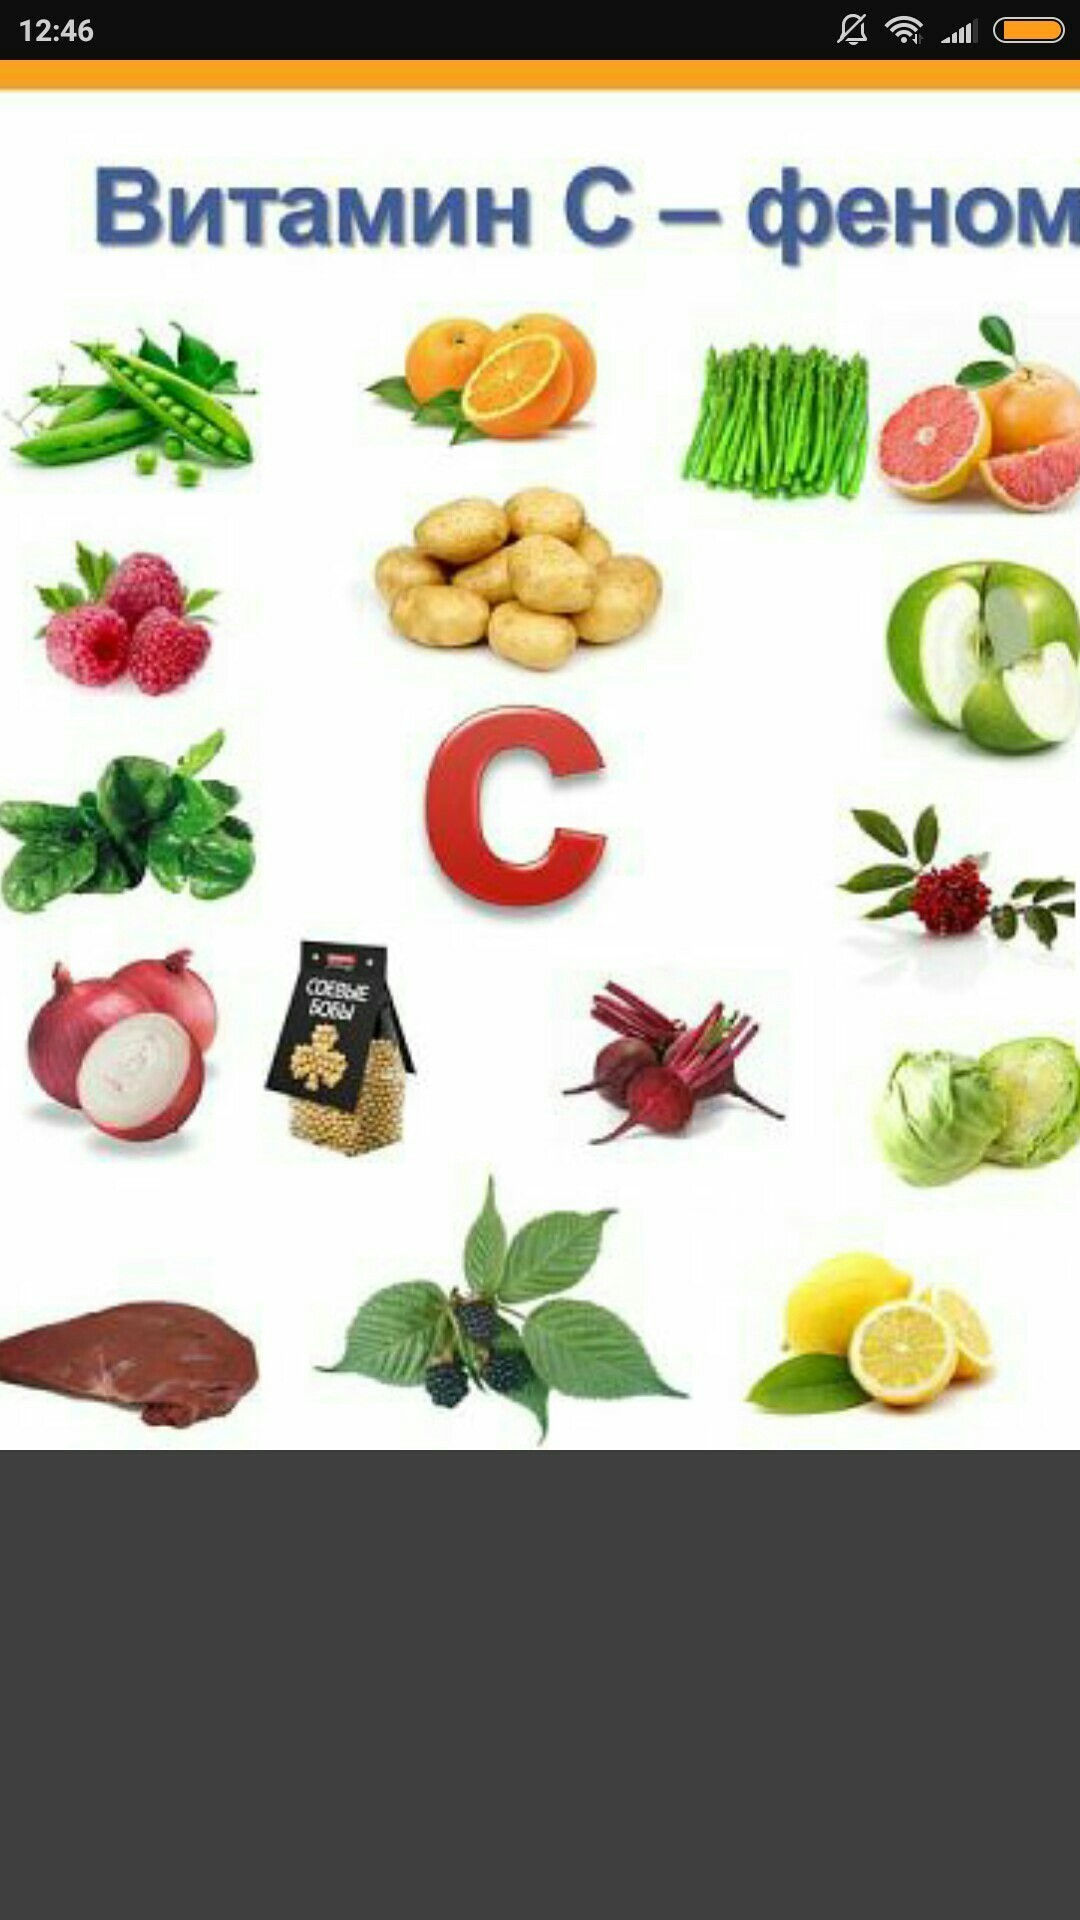 Витамин б фрукты овощи. Витамины в фруктах. Что такое витамины. Овощи и фрукты с витамином c. Витамины в овощах.